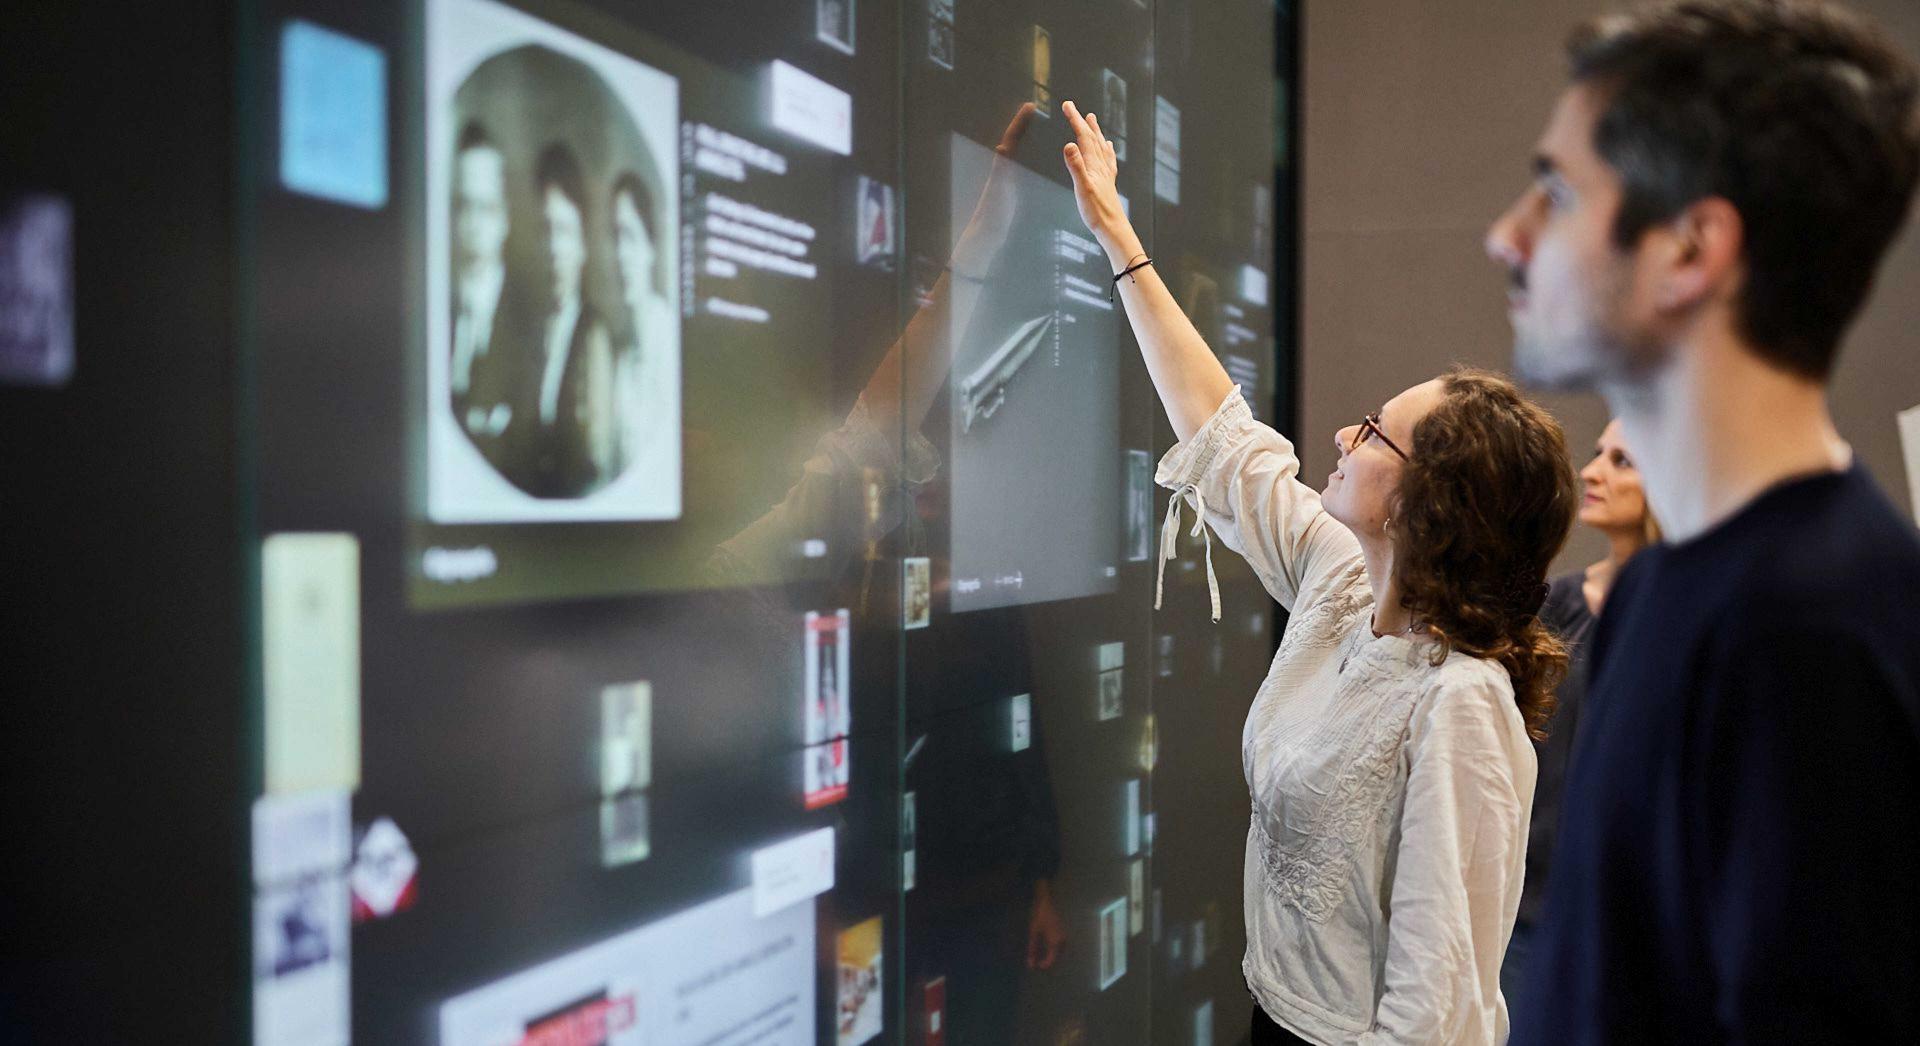 Menschen berühren eine große Touchscreen-Wand, auf der Dokumente und Objekte zu sehen sind